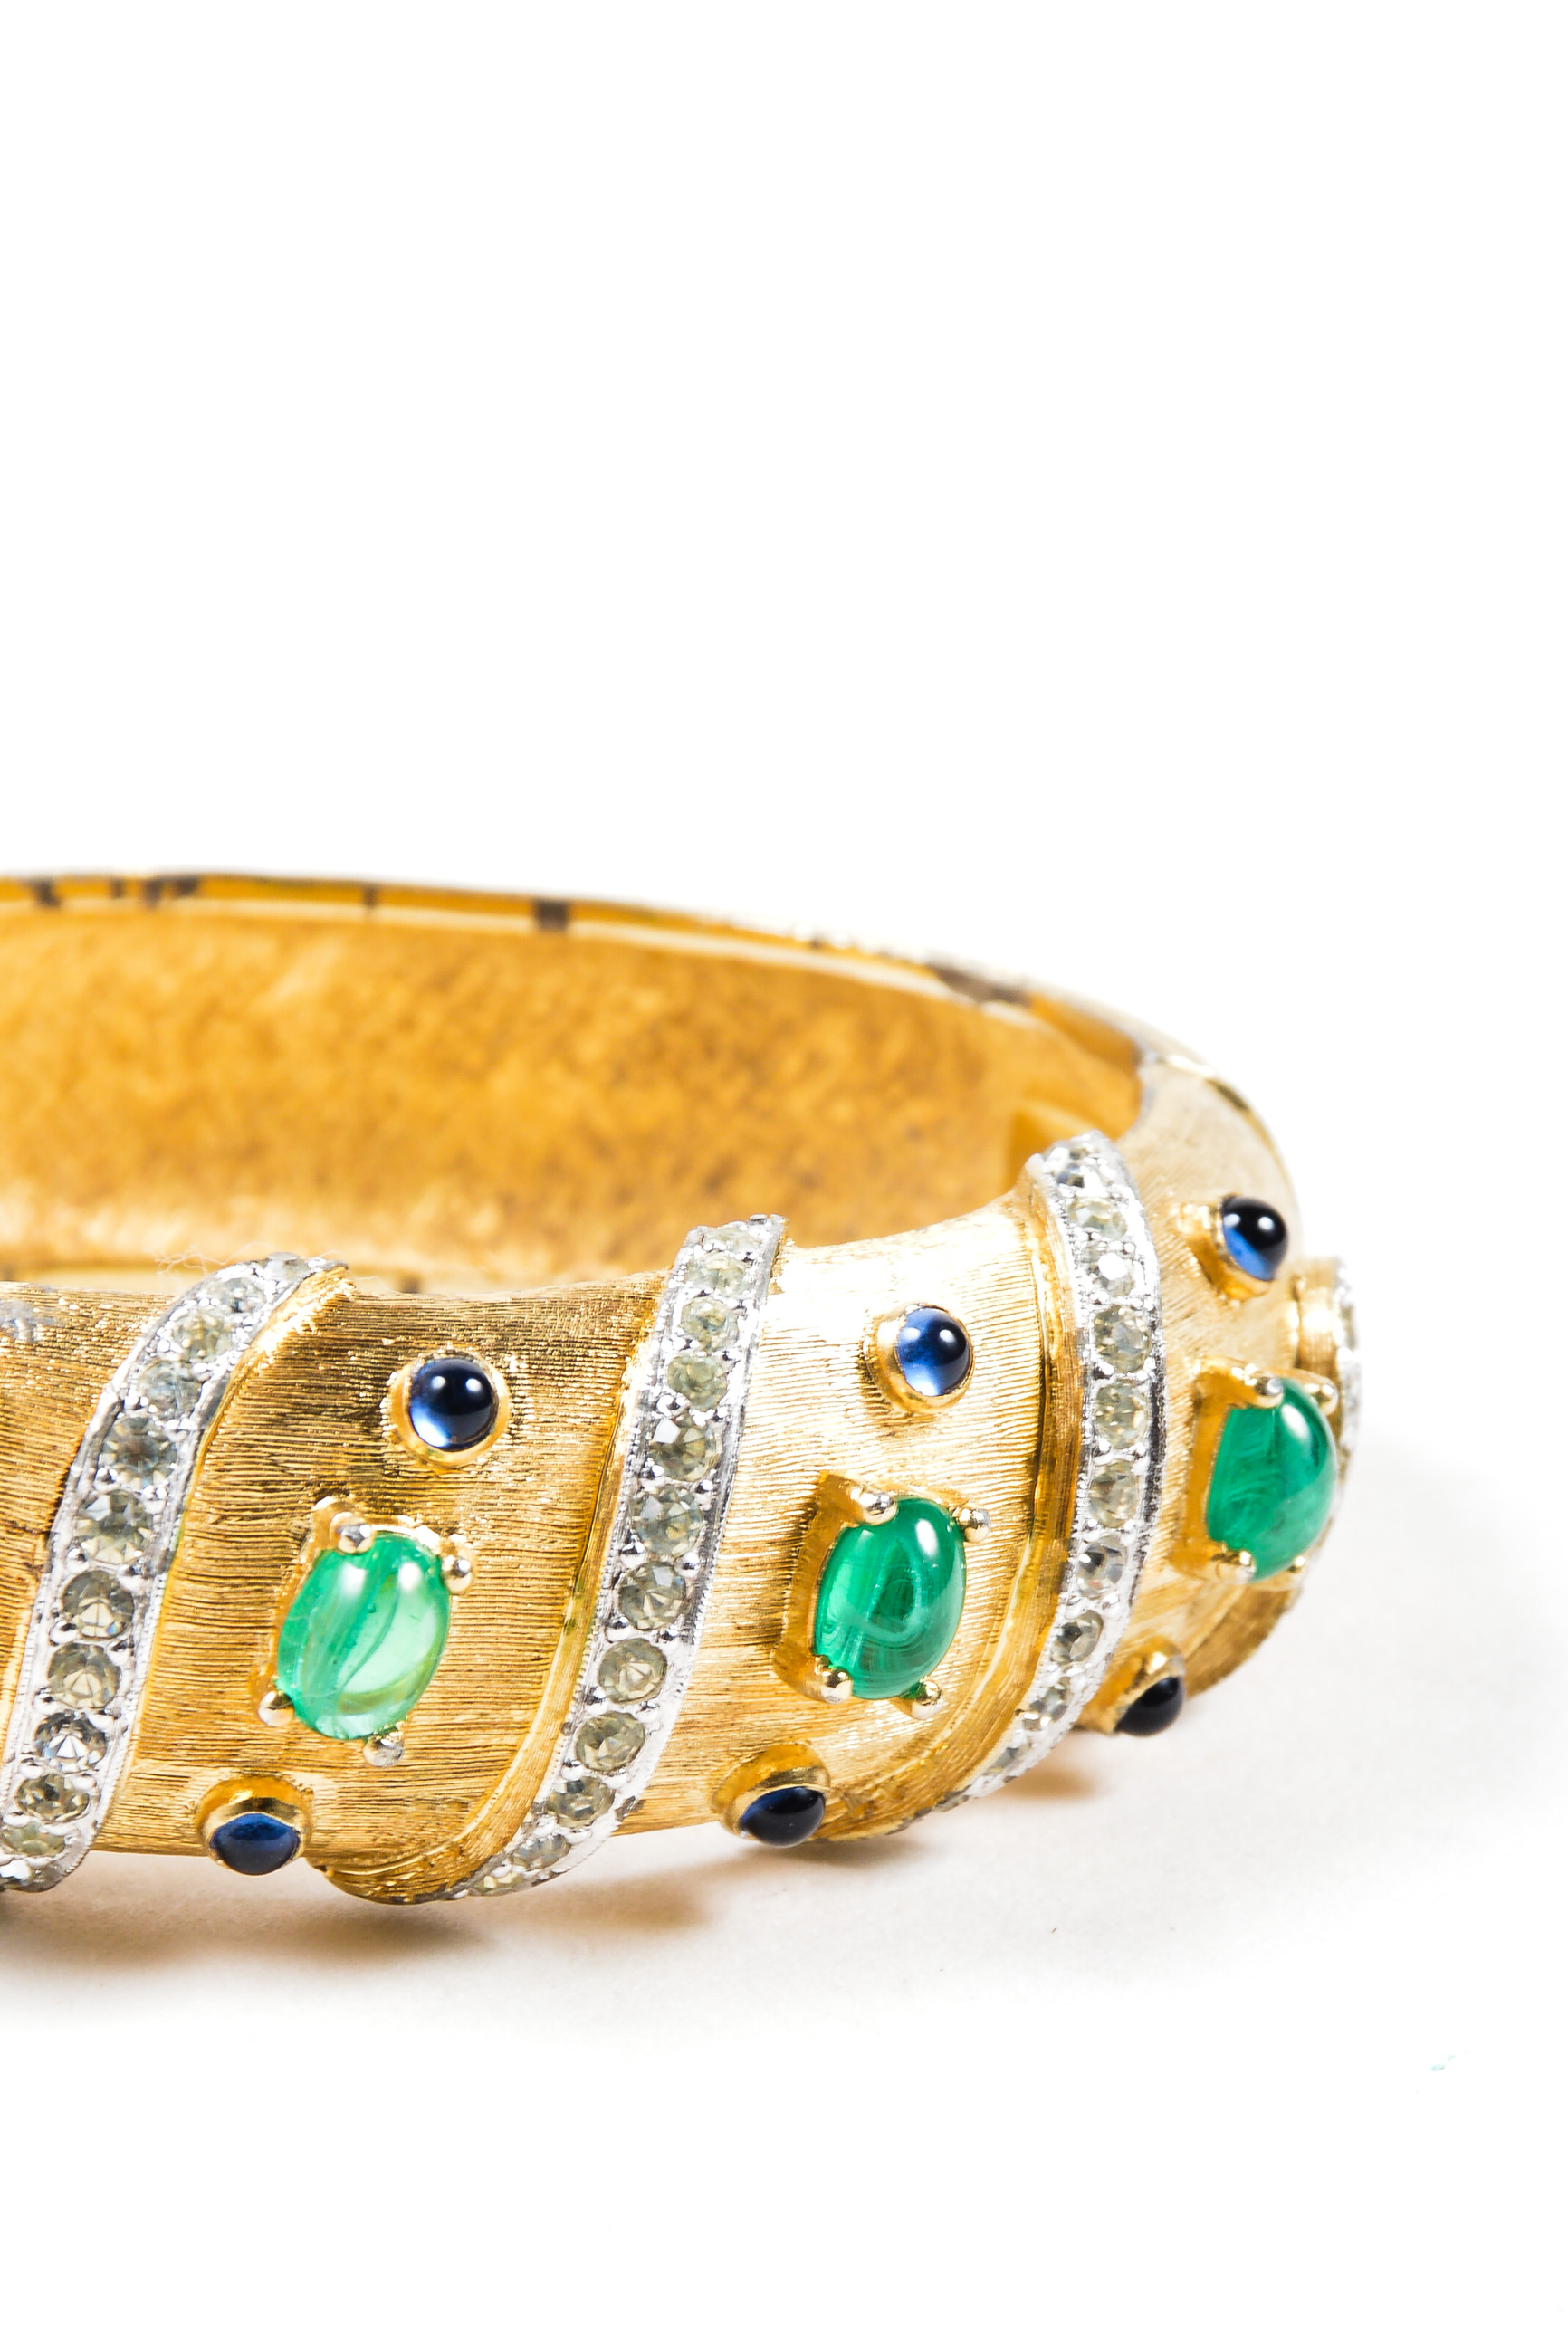 073_VINTAGE Joseph Mazer Gold Tone Rhinestone & Cabochon Jeweled Bangle Bracelet.jpg